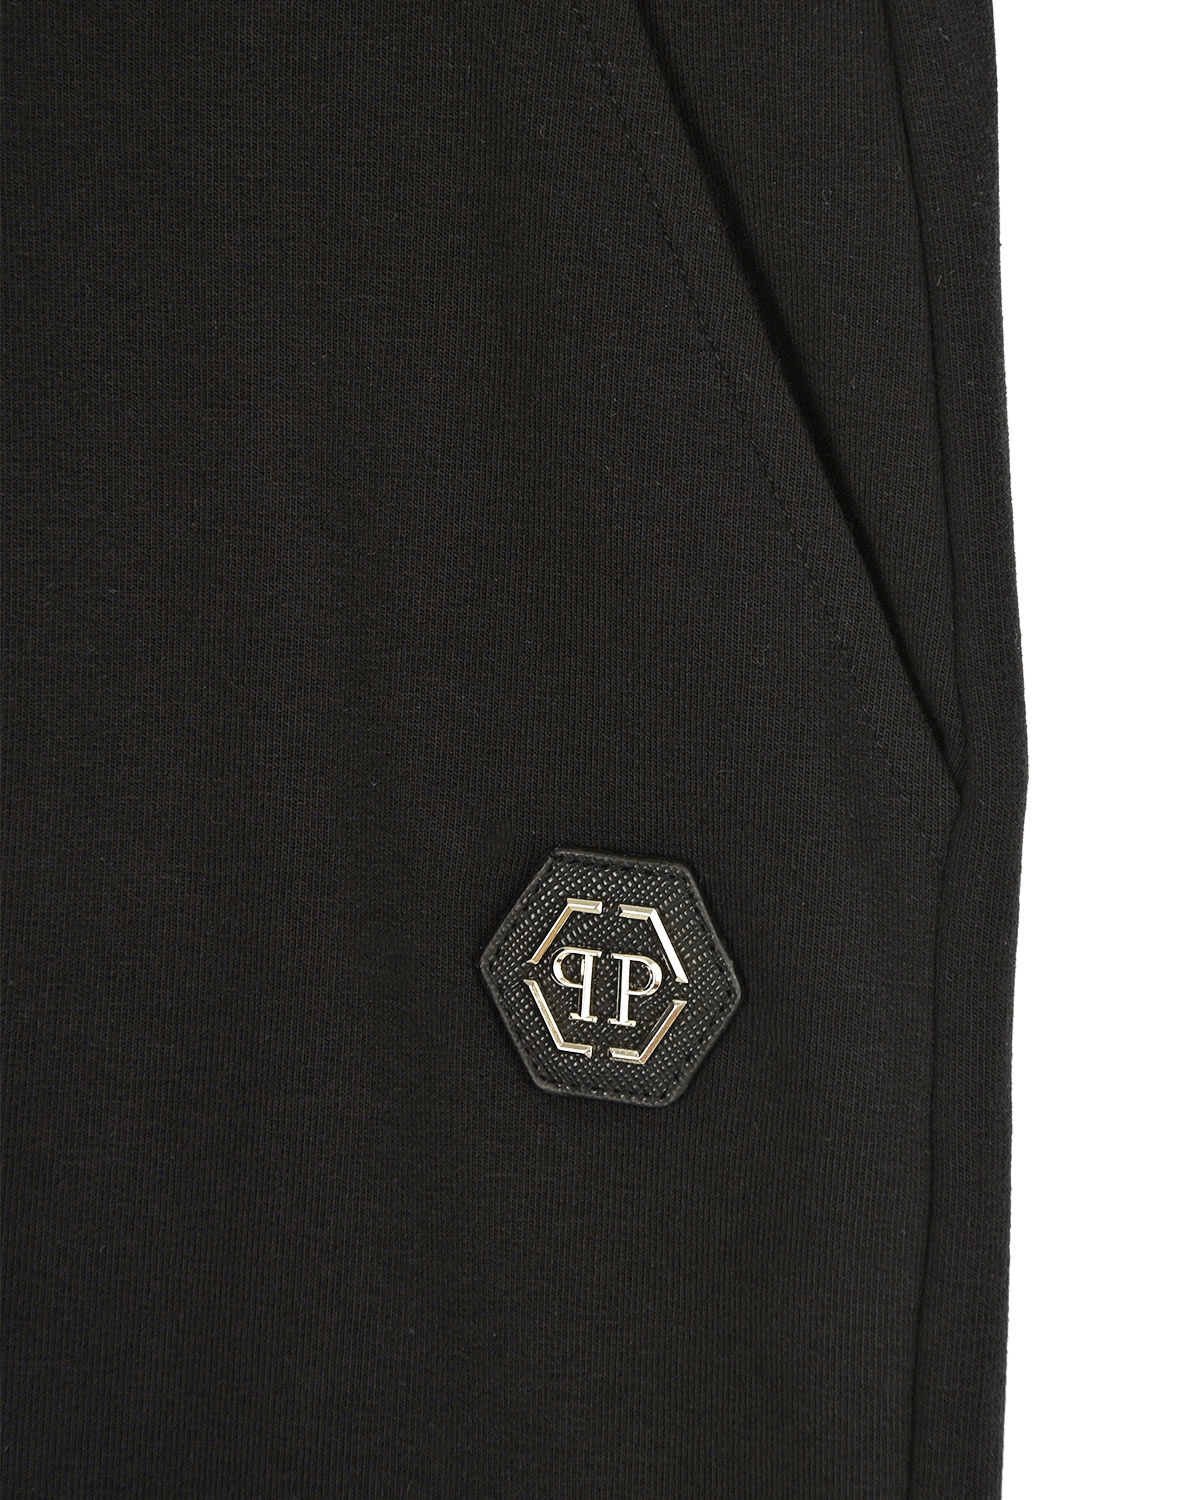 Черные спортивные брюки с принтом "Teddy" Philipp Plein детские, размер 140, цвет черный - фото 3